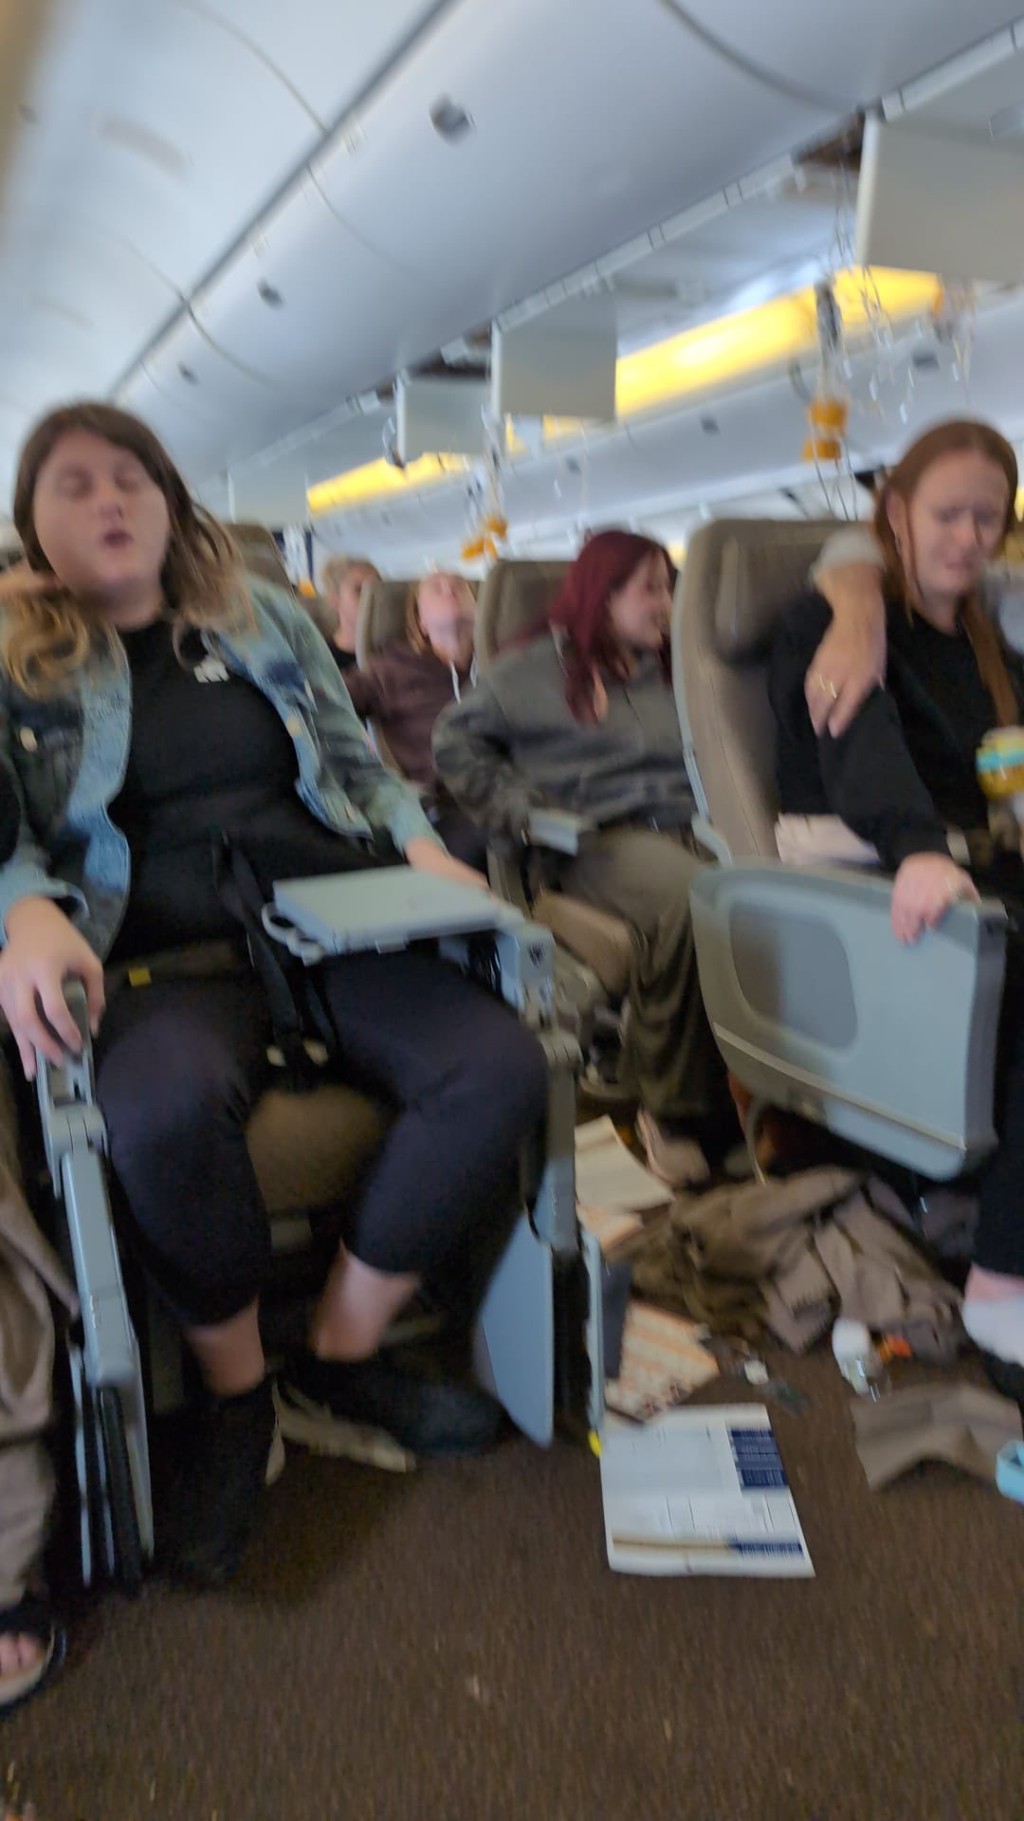 机舱内的照片显示满地杂物，氧气面罩弹出，但乘客无暇顾及。 X